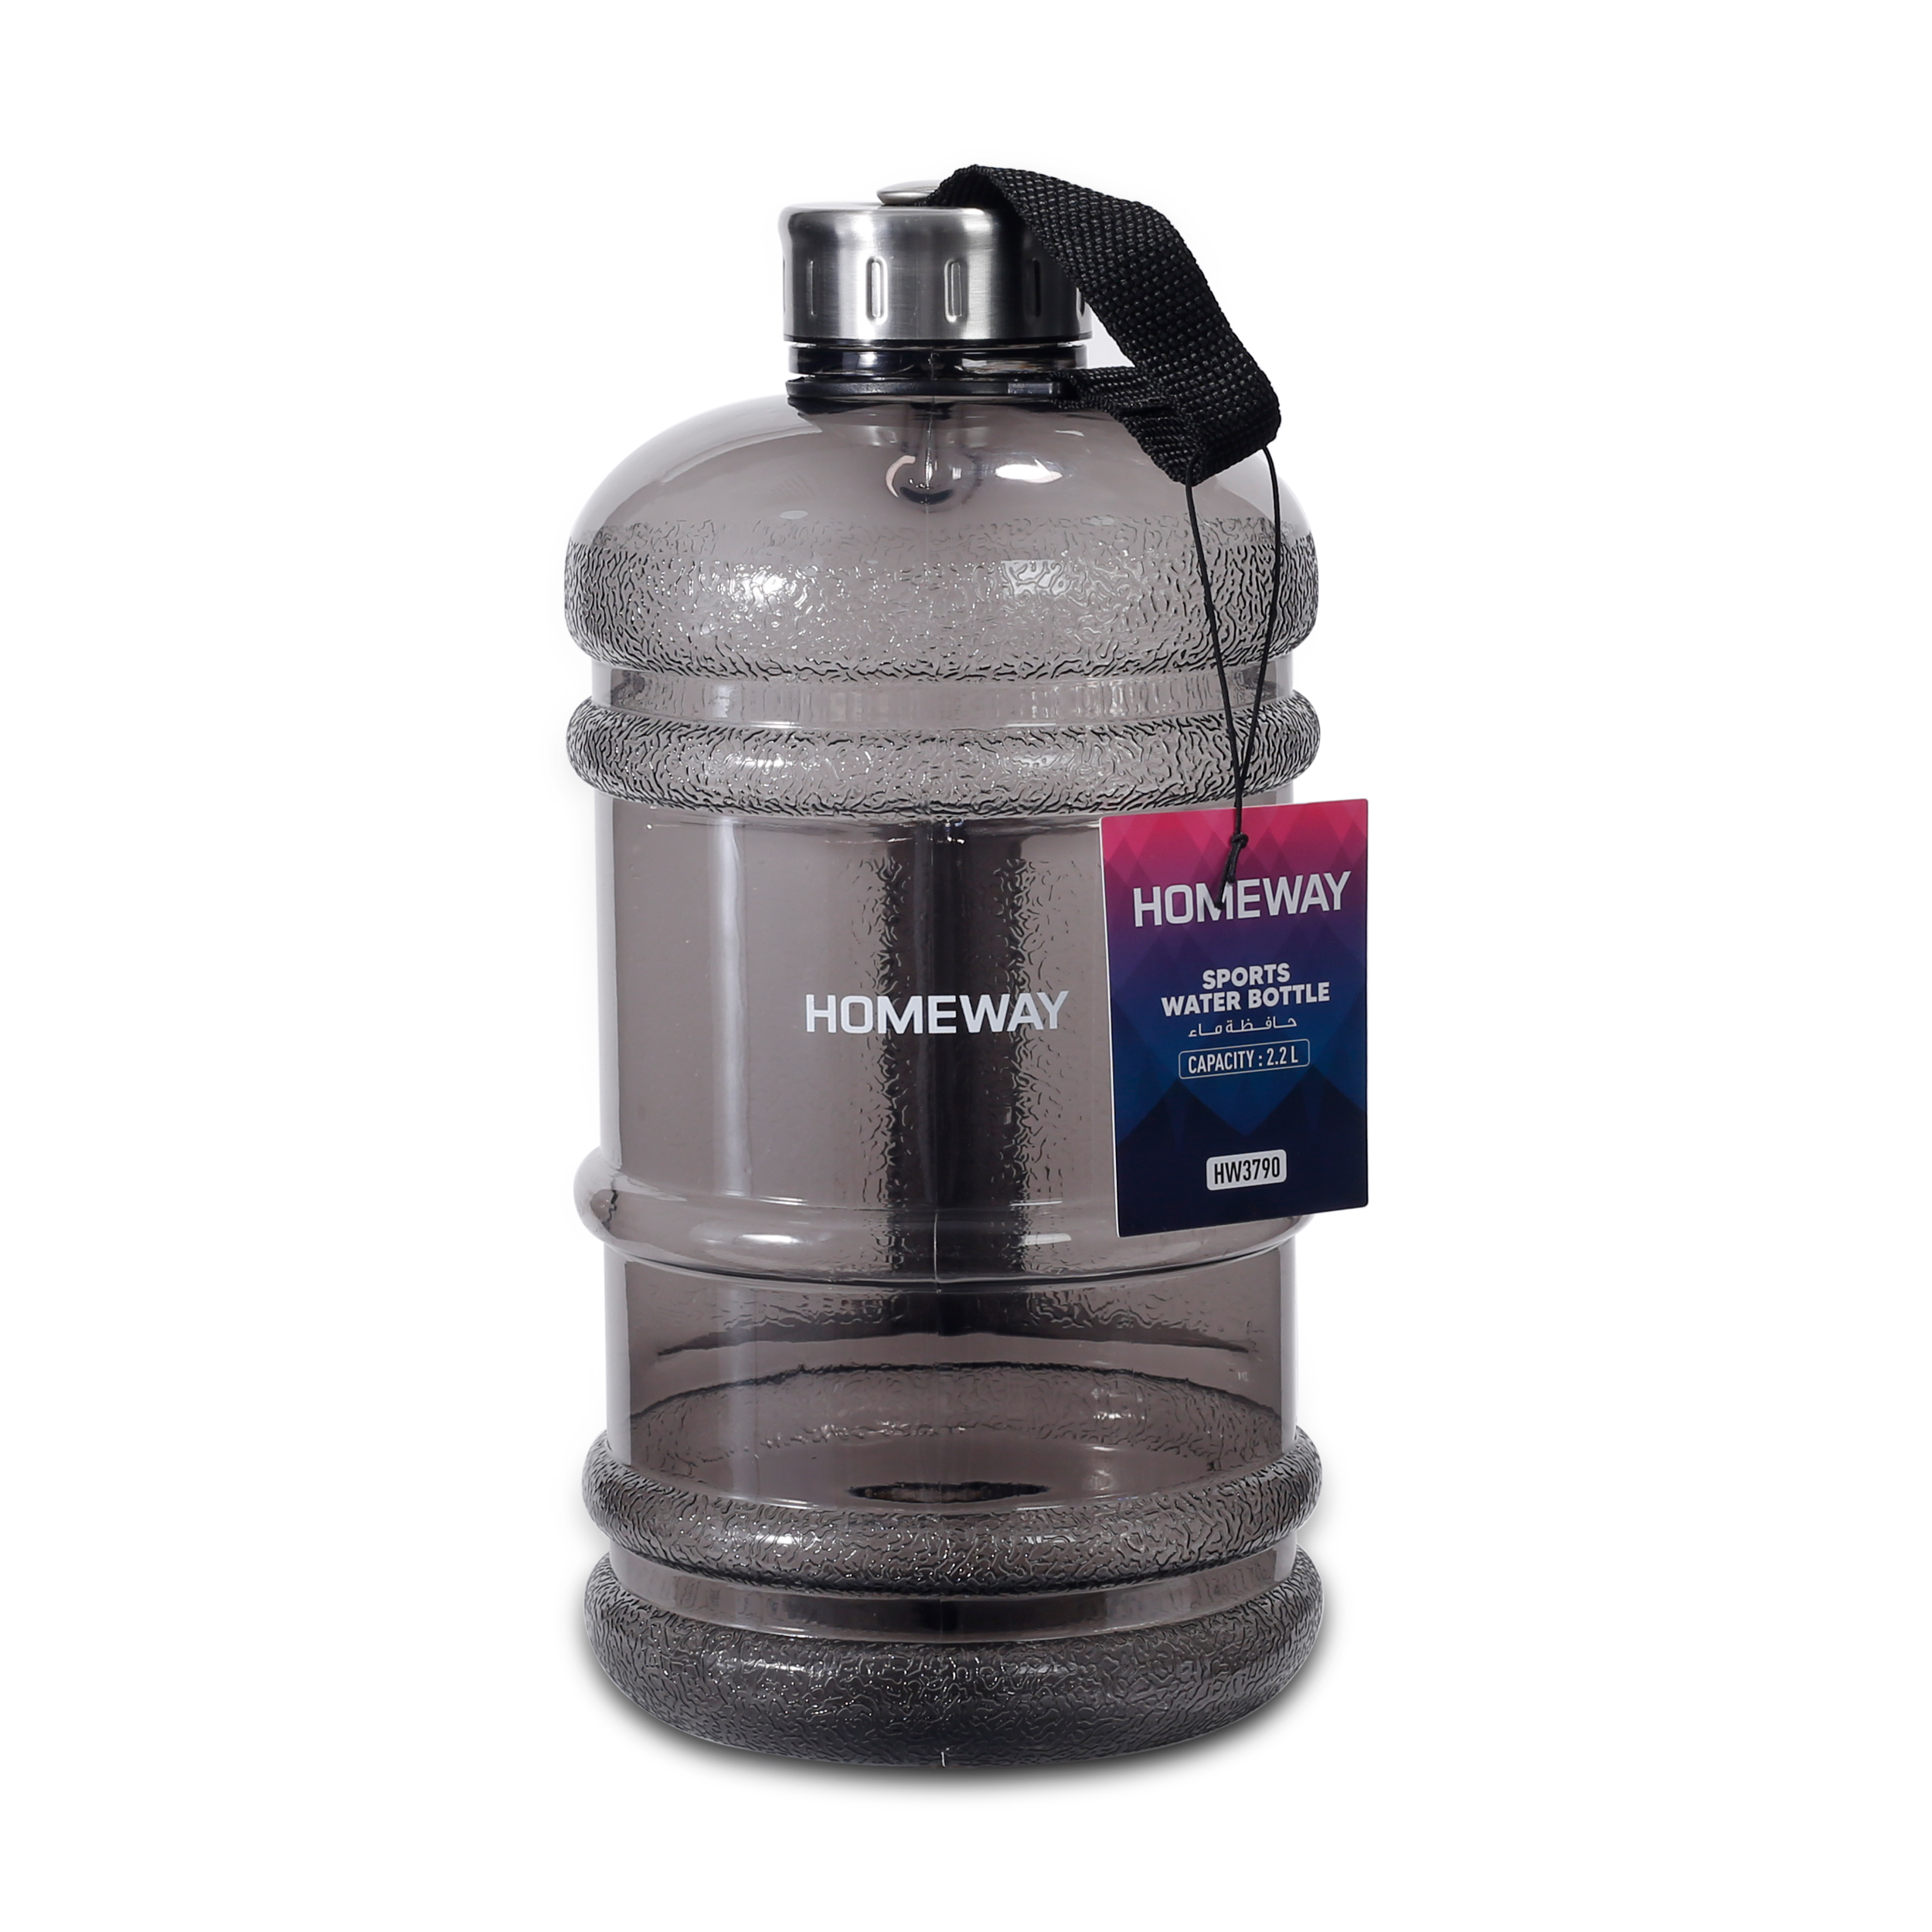 Homeway Water Bottle 2.2L HW3790